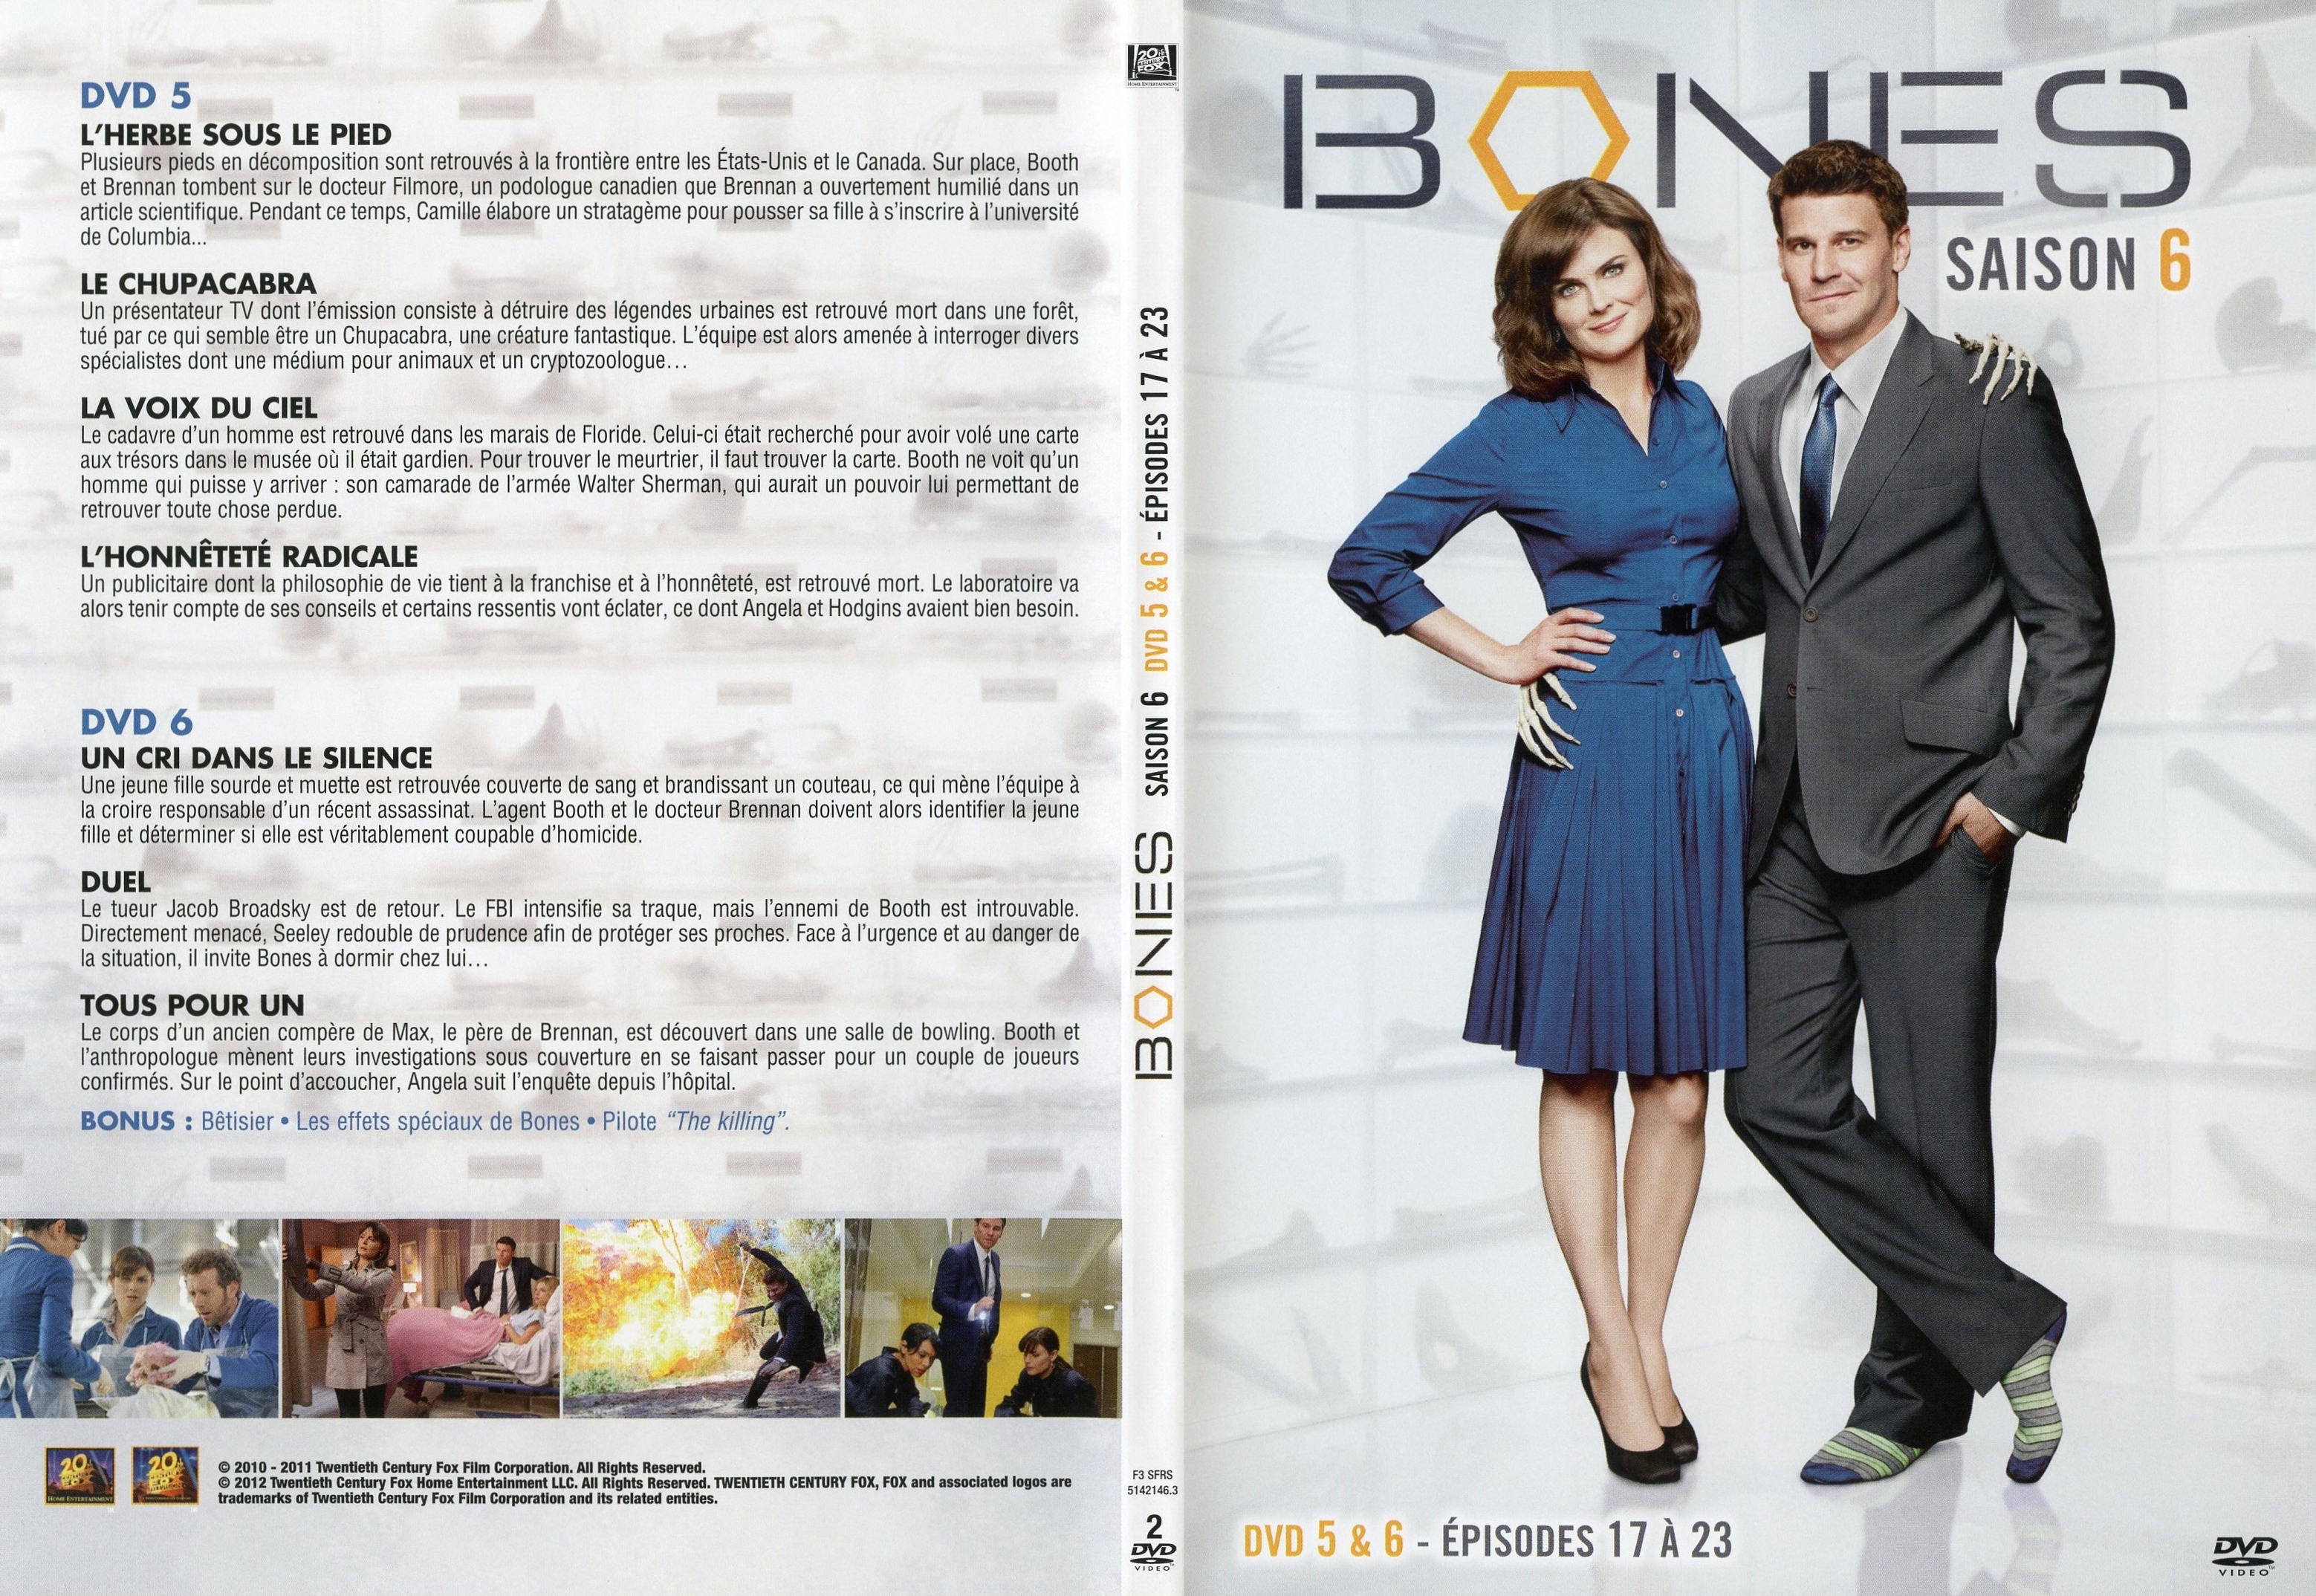 Jaquette DVD Bones Saison 6 DVD 3